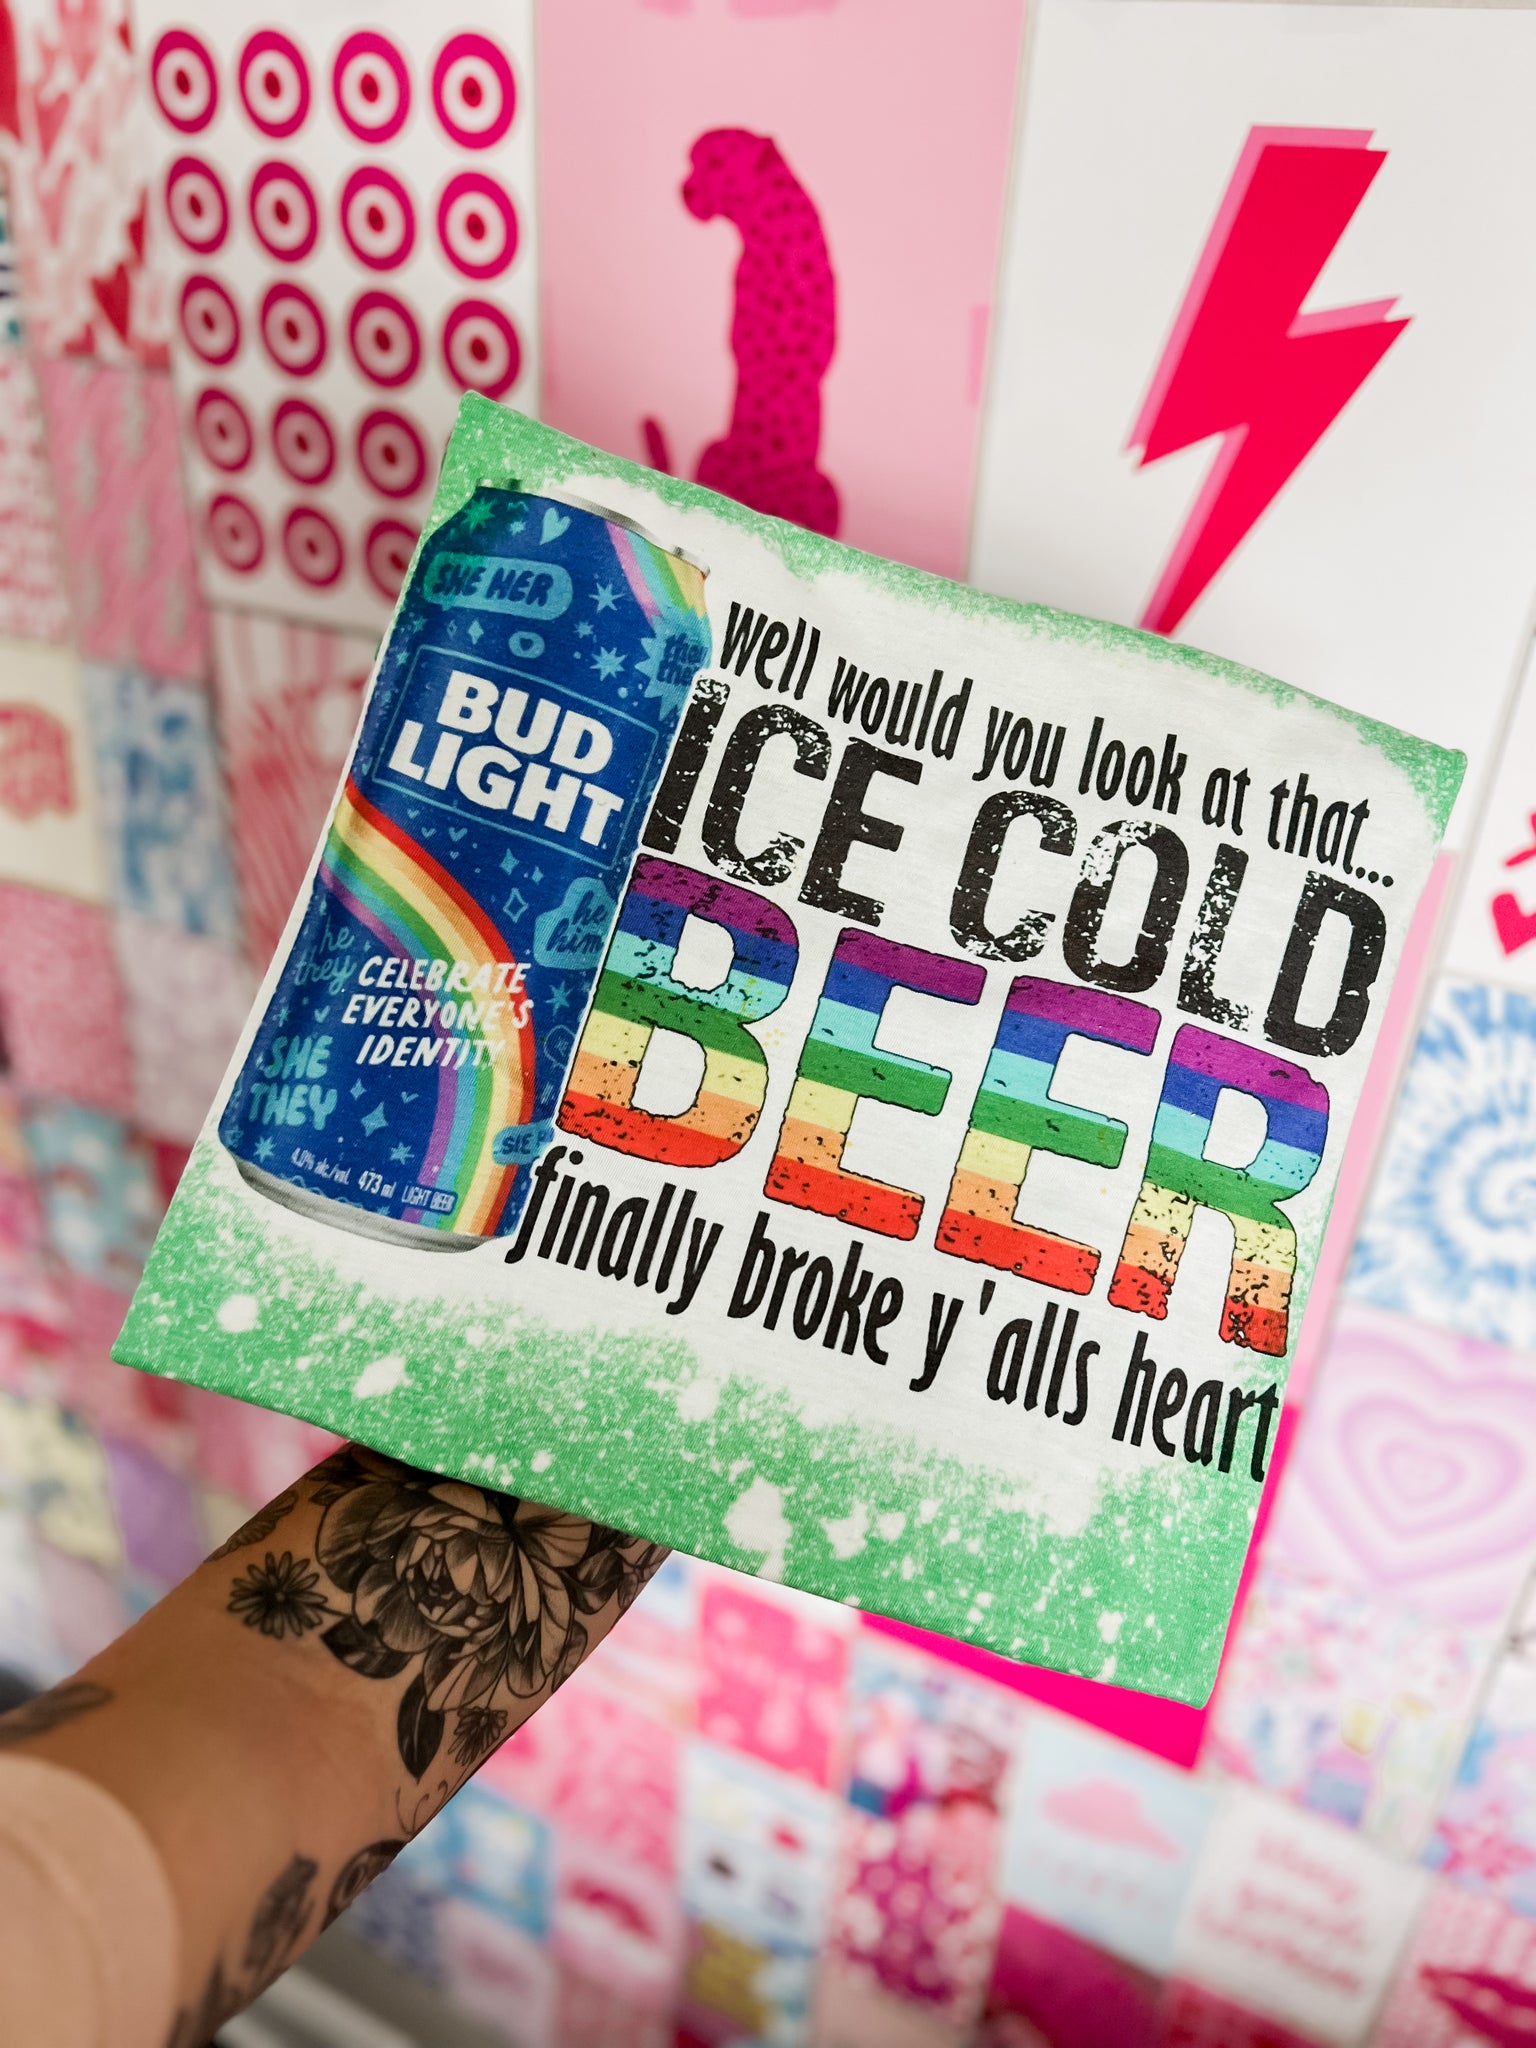 Ice Cold beer finally broke ya’lls heart